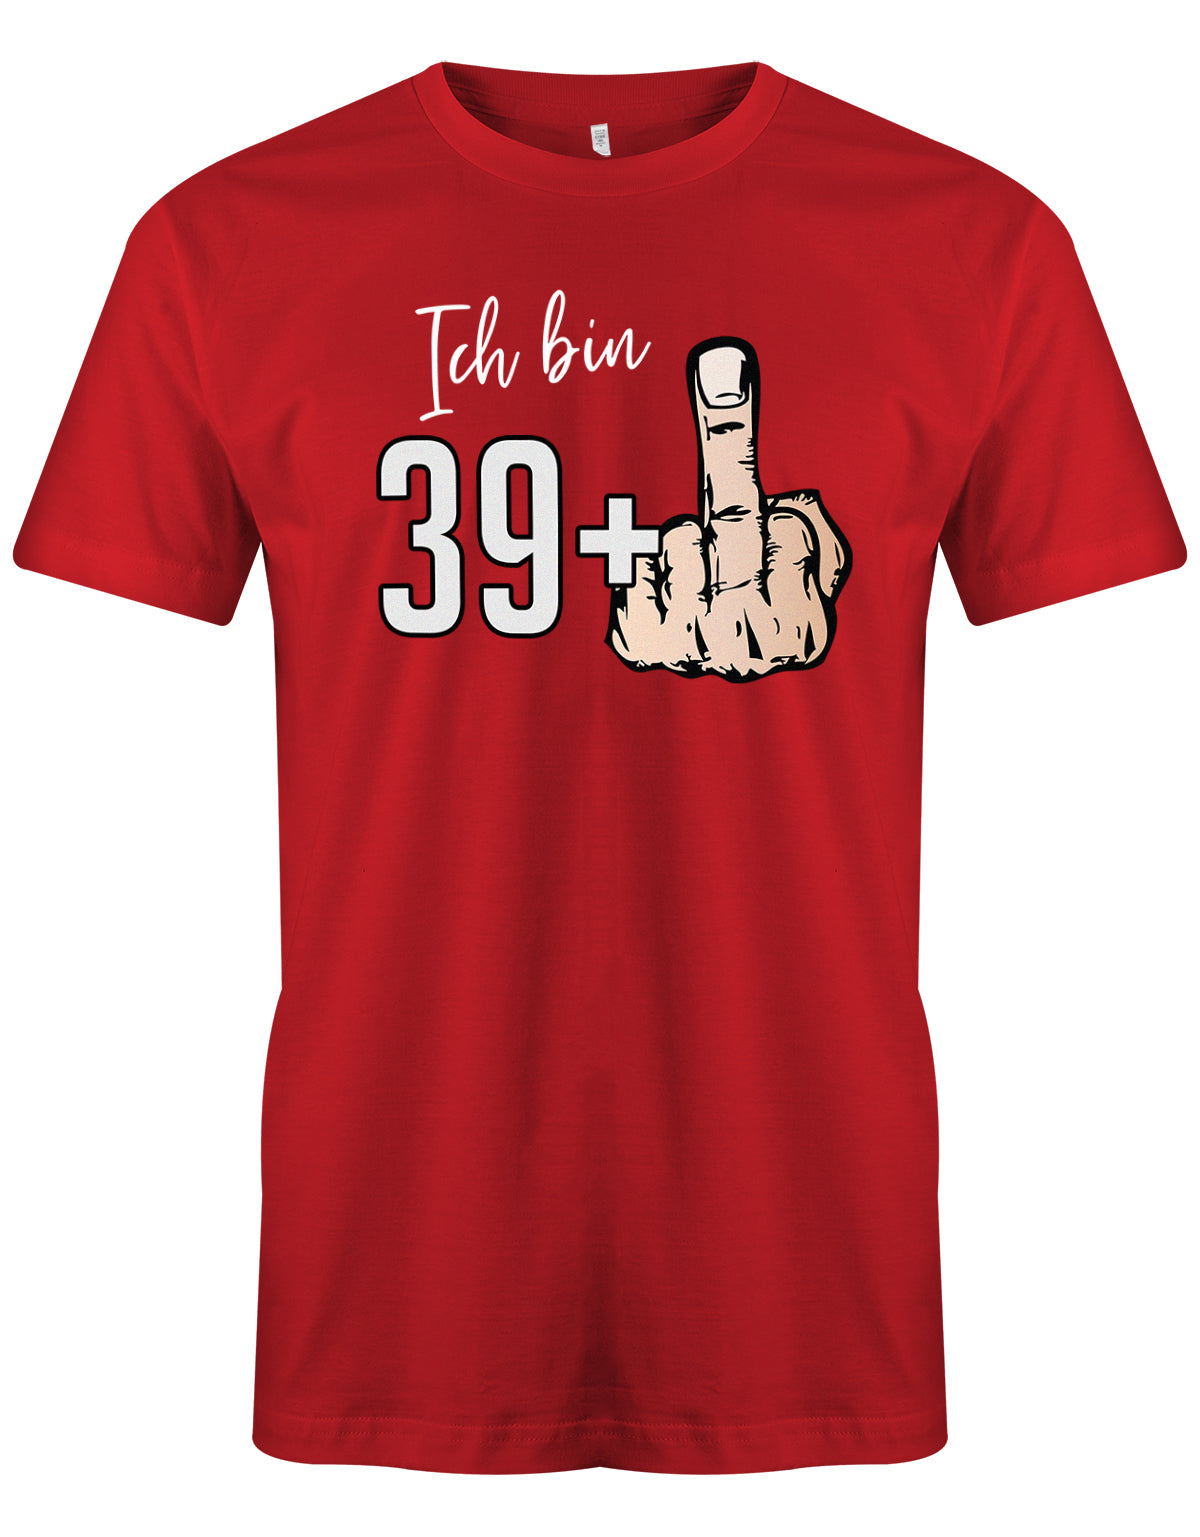 Ich bin 39 plus Mittelfinger - T-Shirt 40 Geburtstag Männer - Jahrgang 1983 TShirt Rot